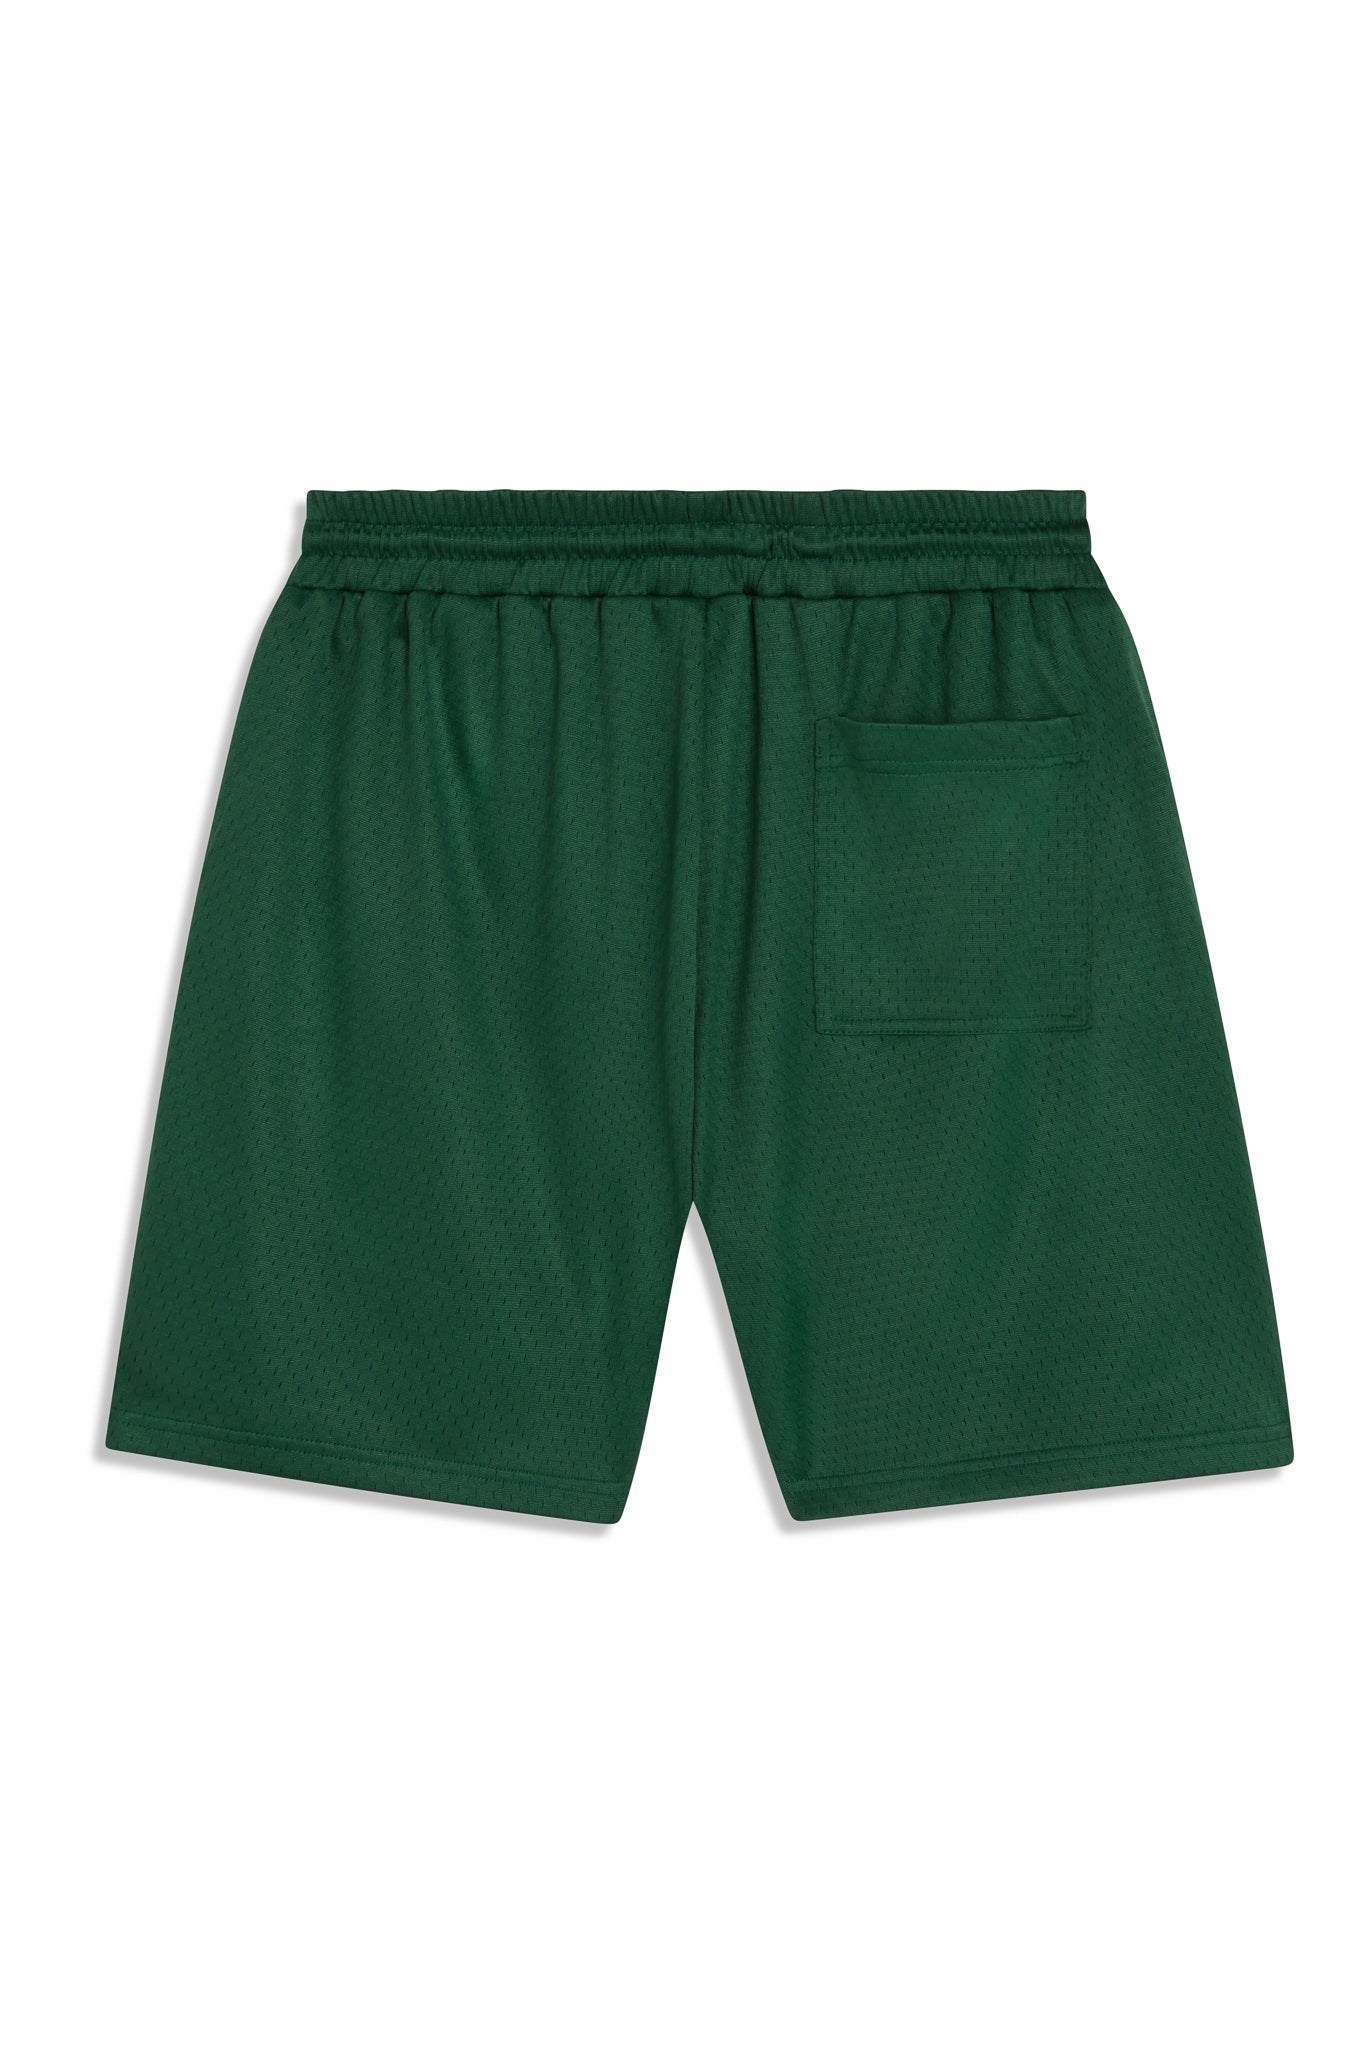 Men's Court Shorts - Green